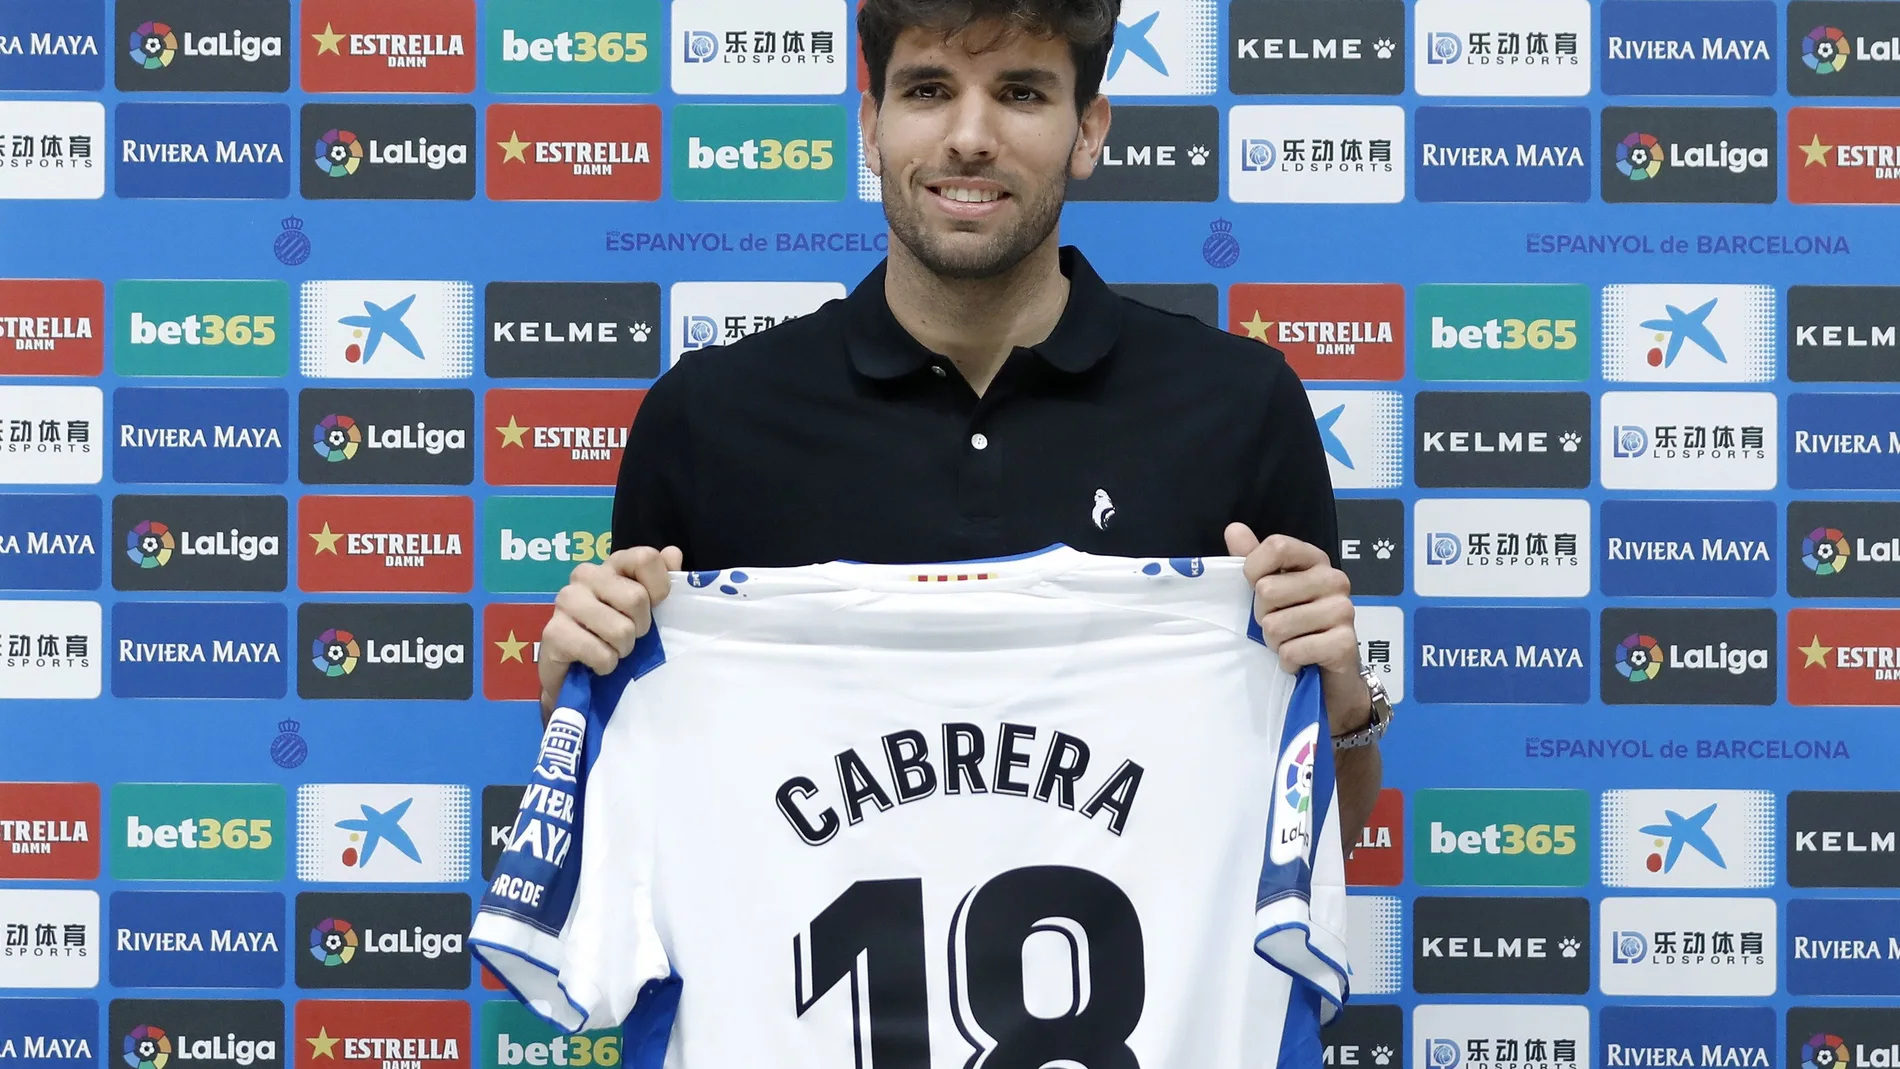 El uruguayo Cabrera, nuevo central del Espanyol